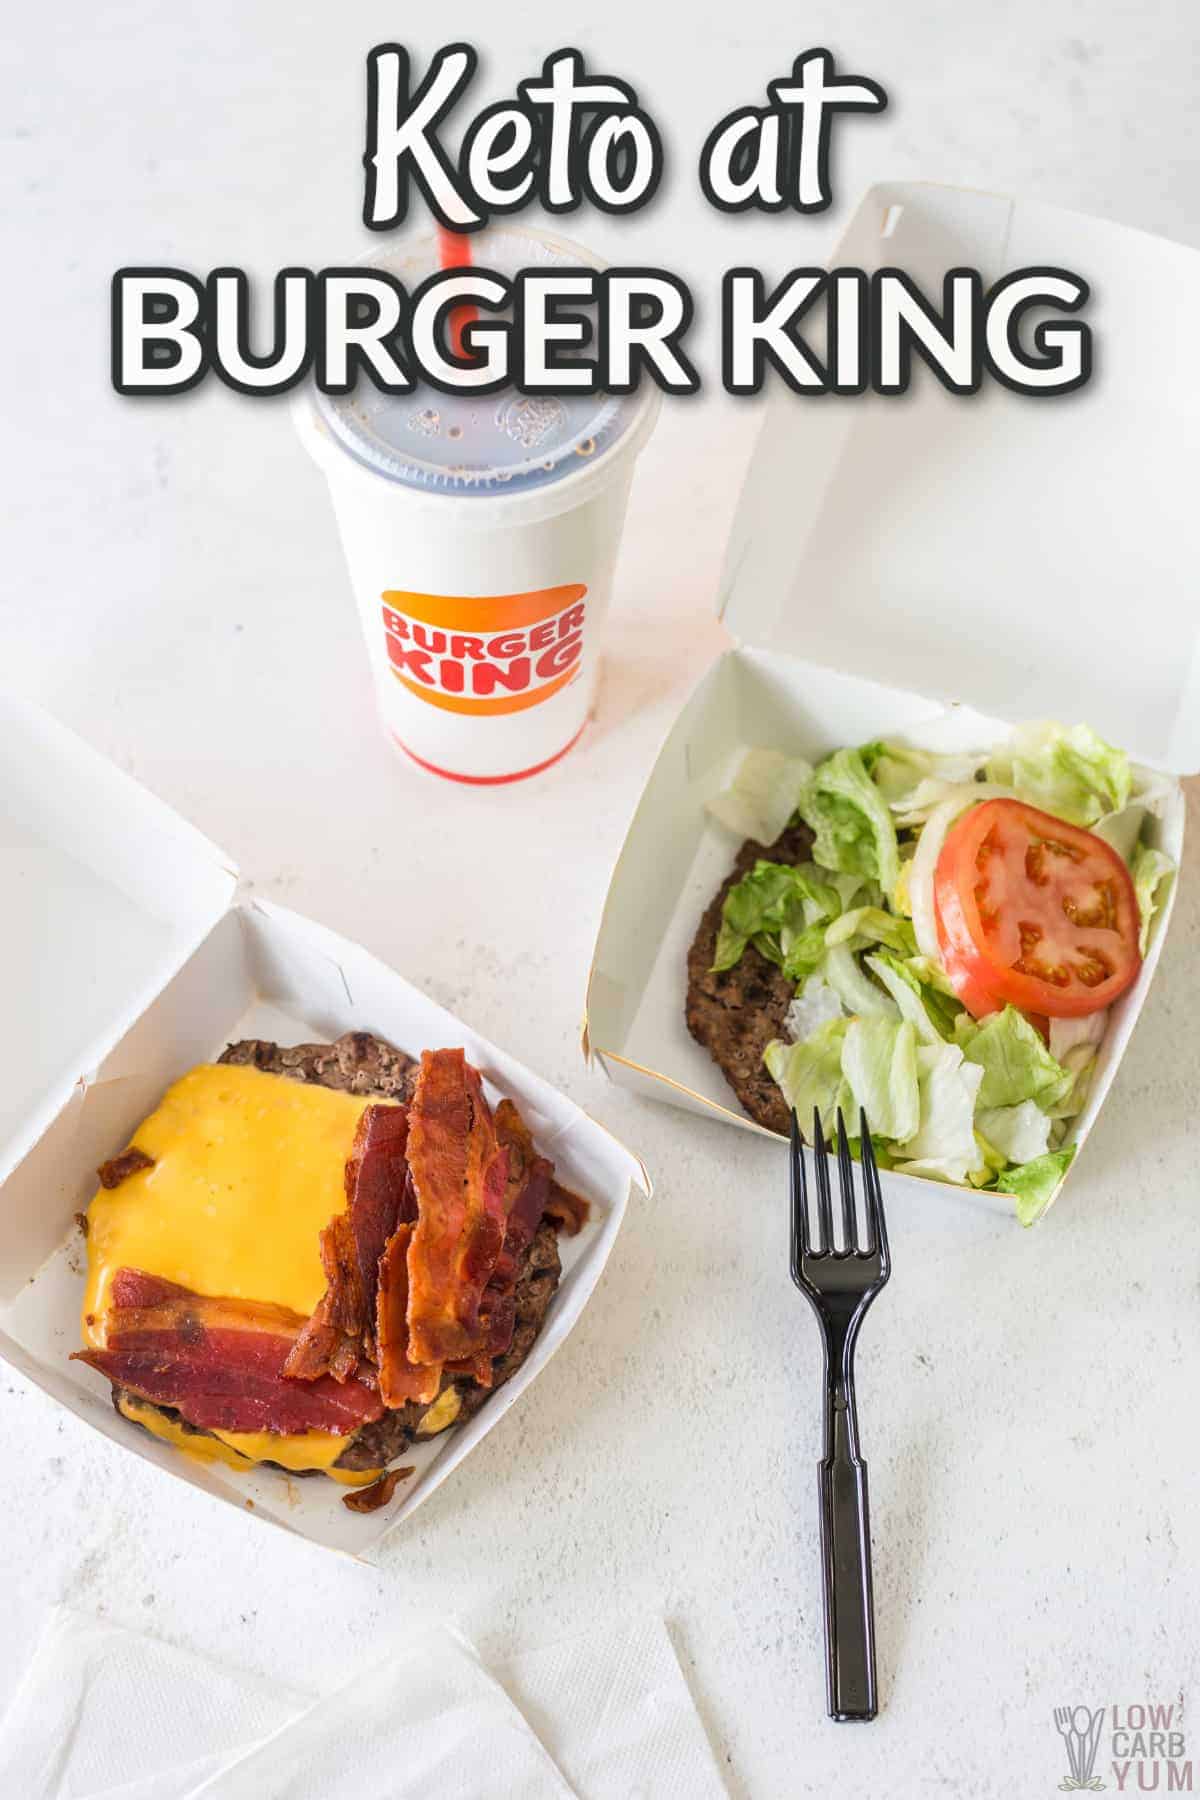 keto at burger king text overlay.